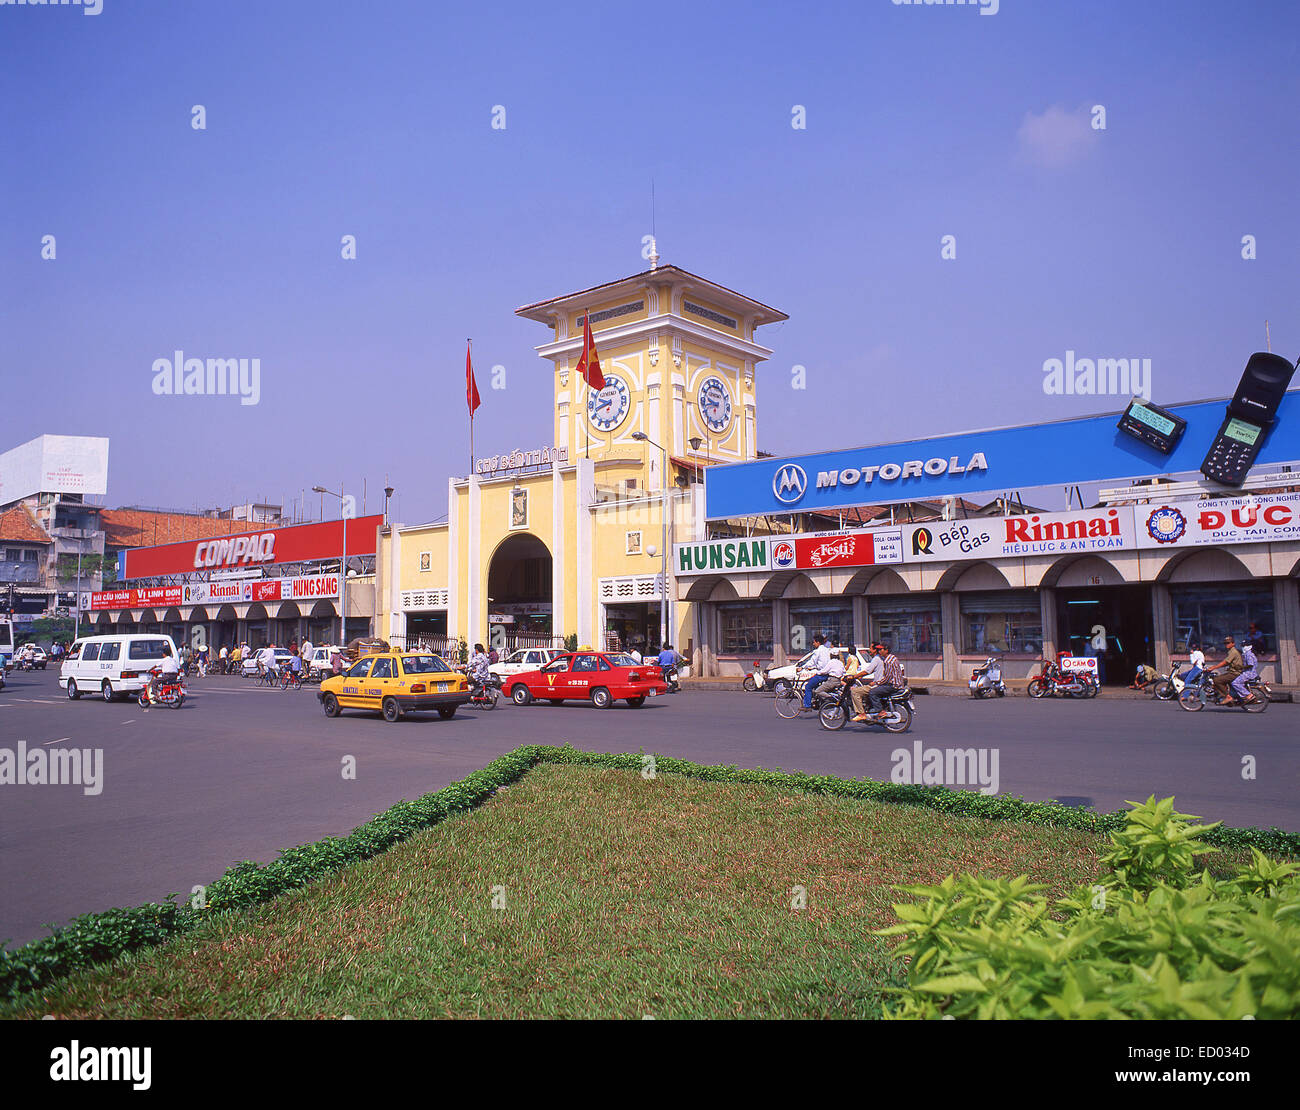 Market Entrance, Ben Thanh Market, Phan Bội Châu, Bến Thành, Ho Chi Minh City (Saigon), Socialist Republic of Vietnam Stock Photo